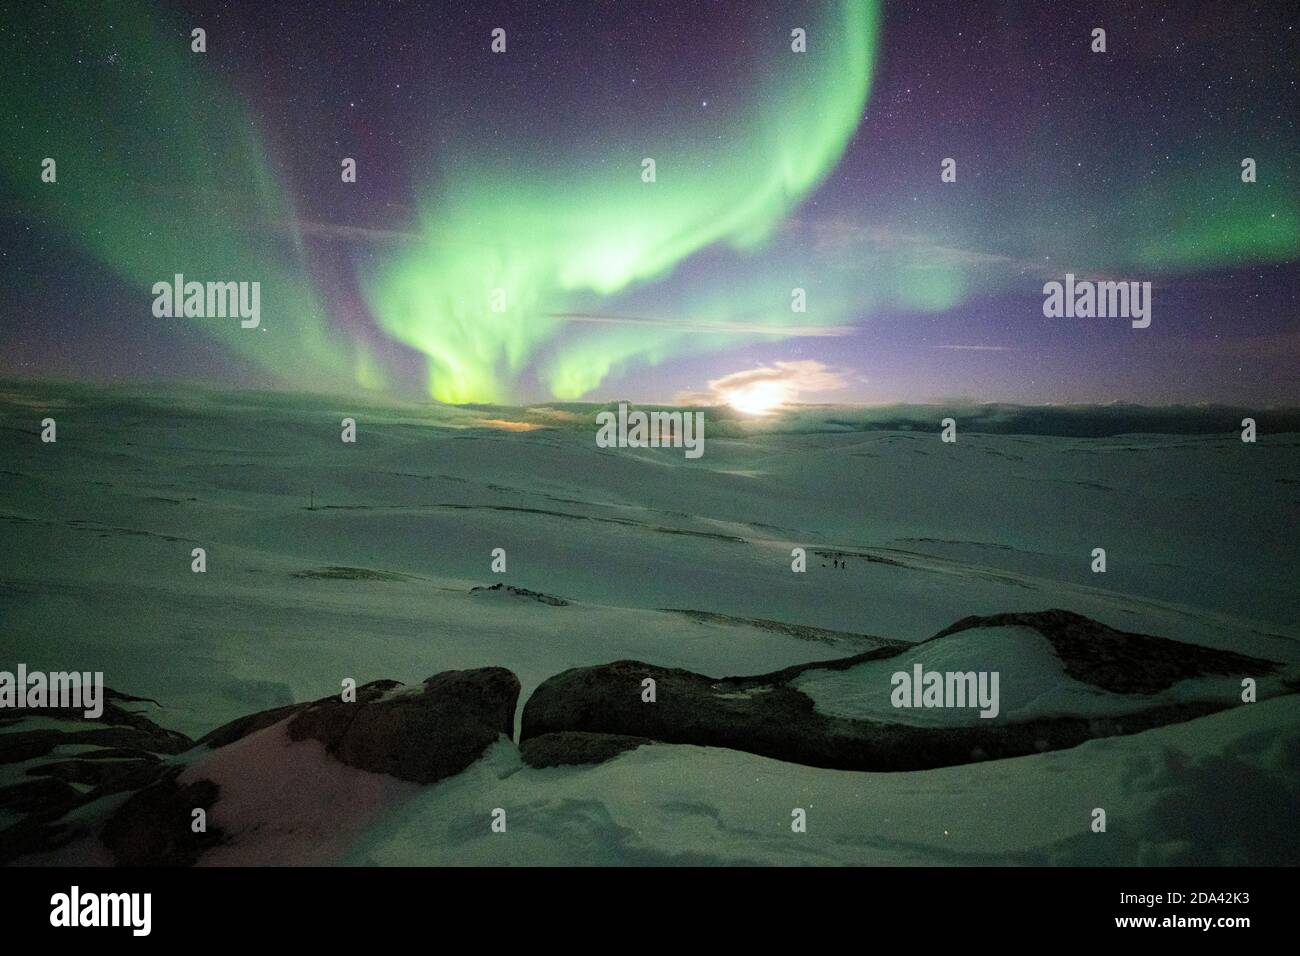 Snowy landscape lit by moon in the starry sky during Northern Lights, Skarsvag, Nordkapp, Troms og Finnmark, Norway Stock Photo